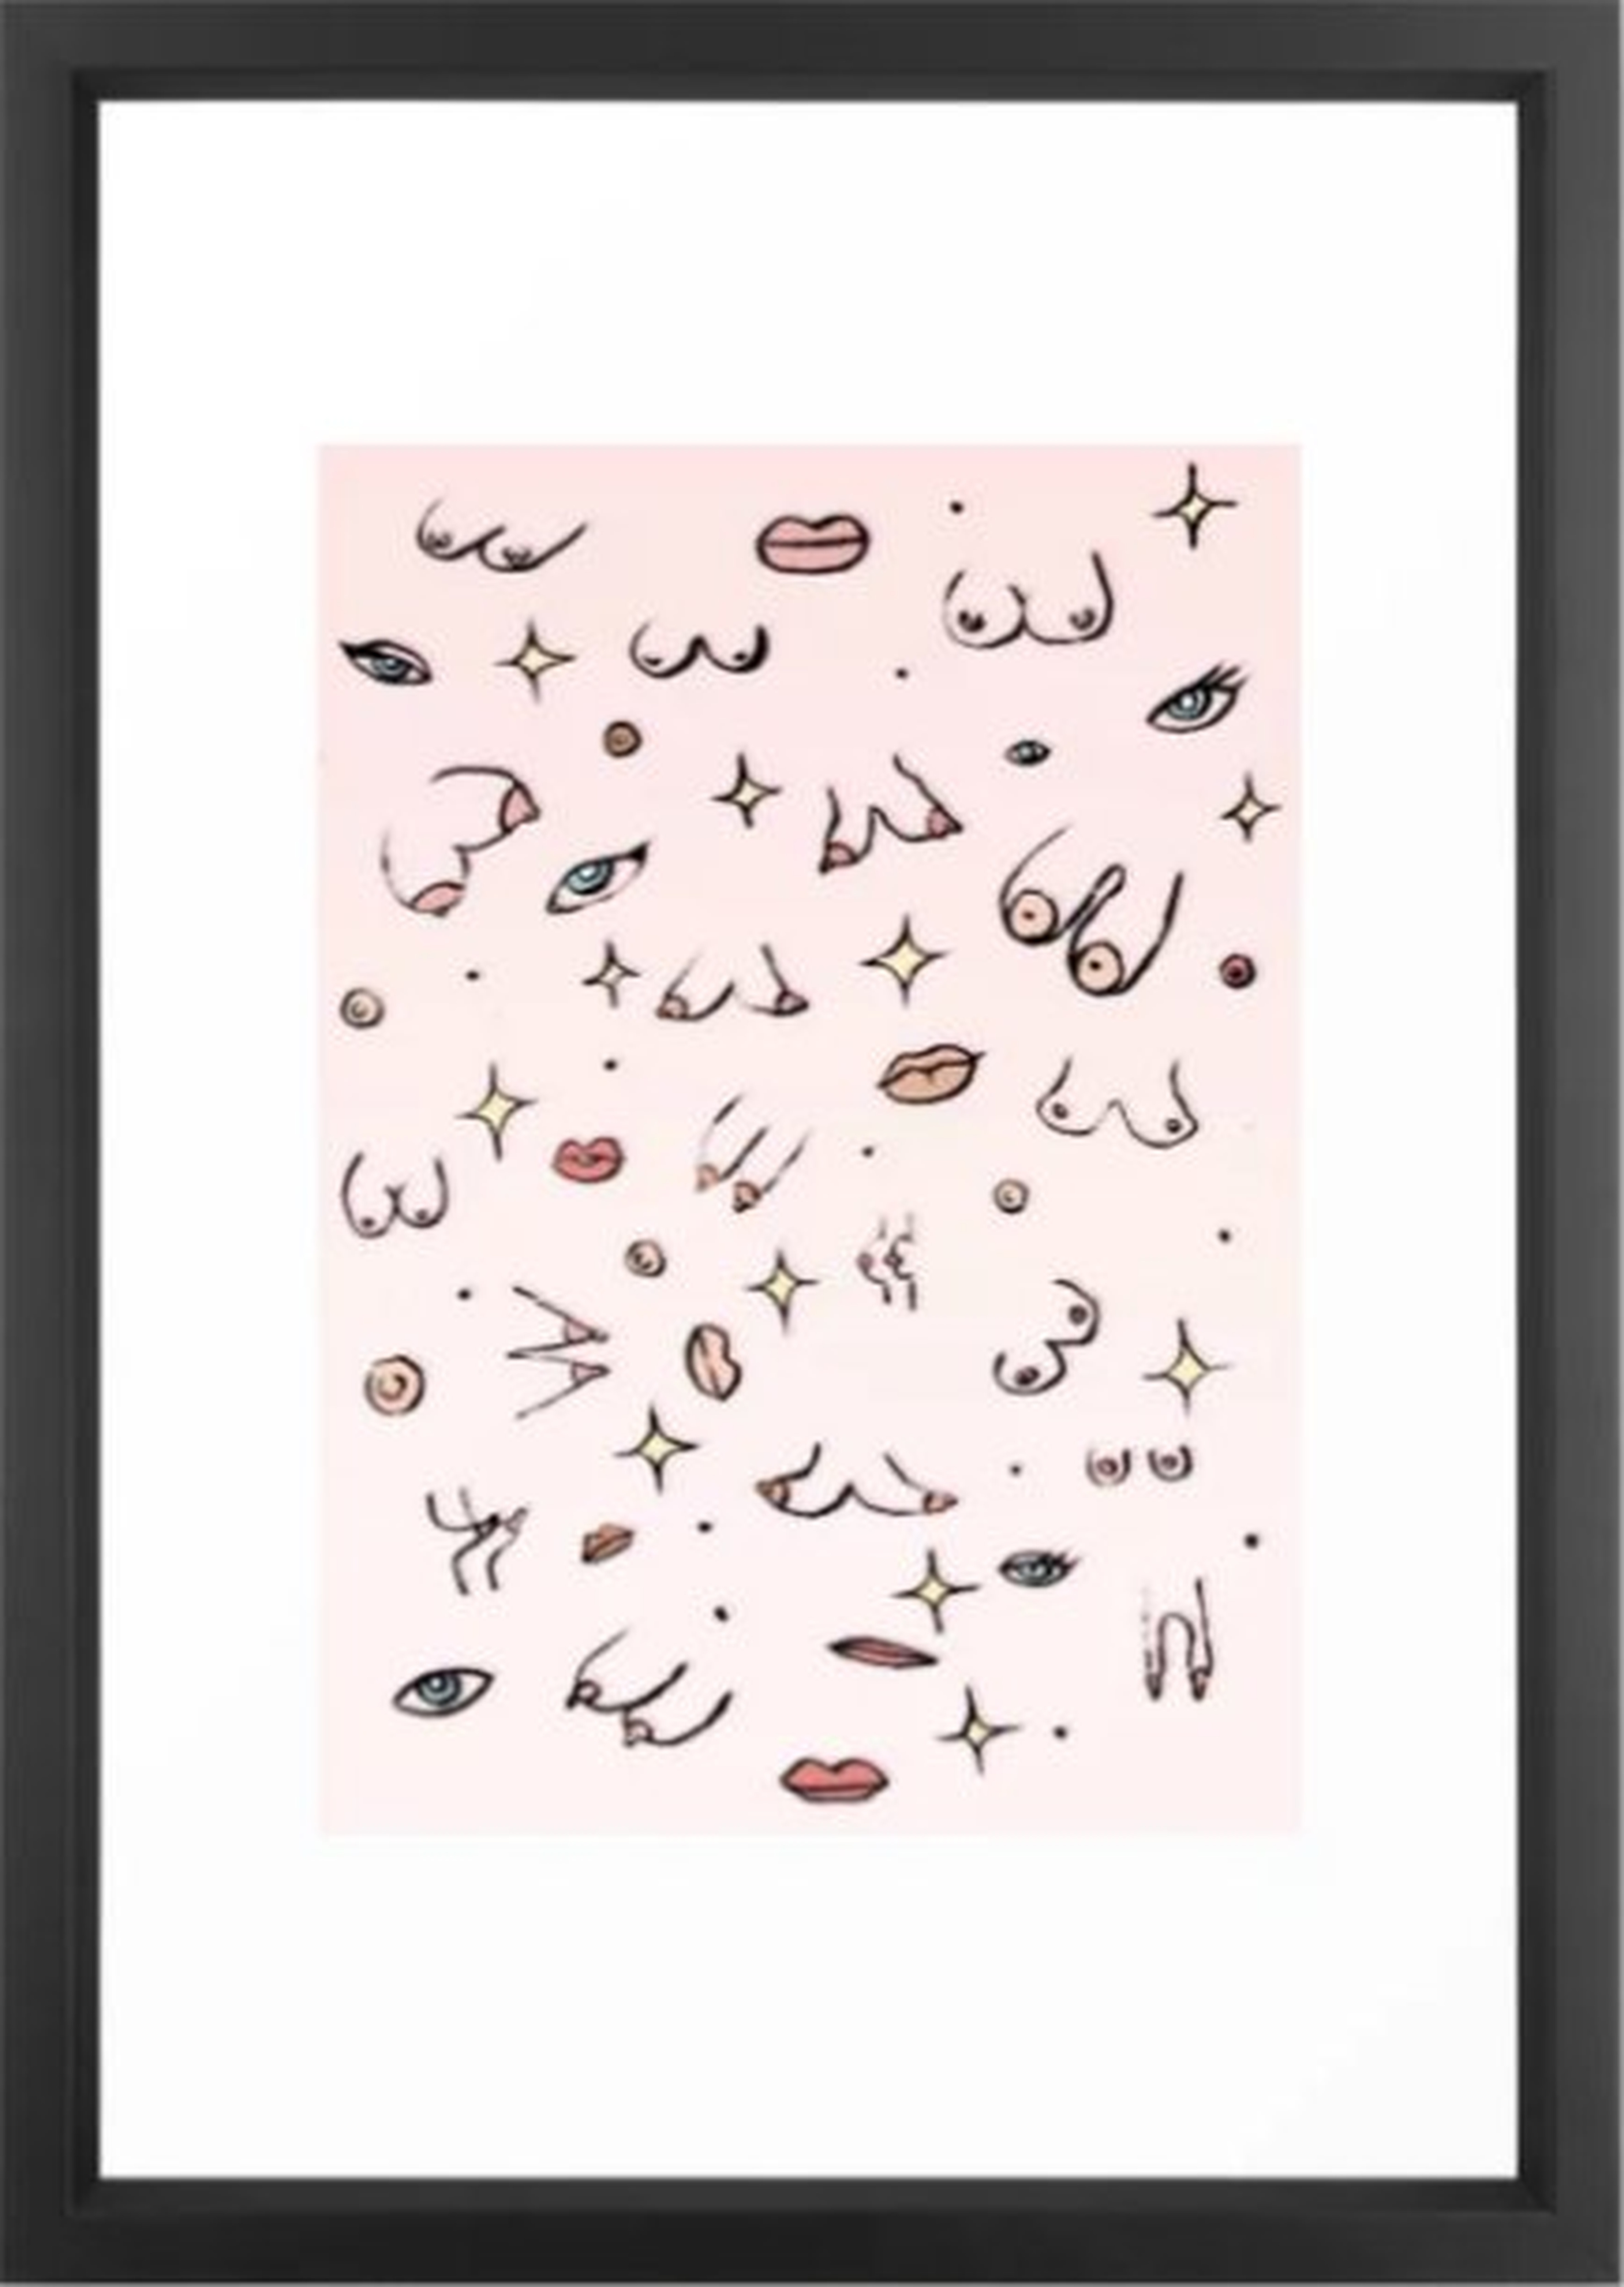 Feminine // Boob Pattern Framed Art Print - Society6